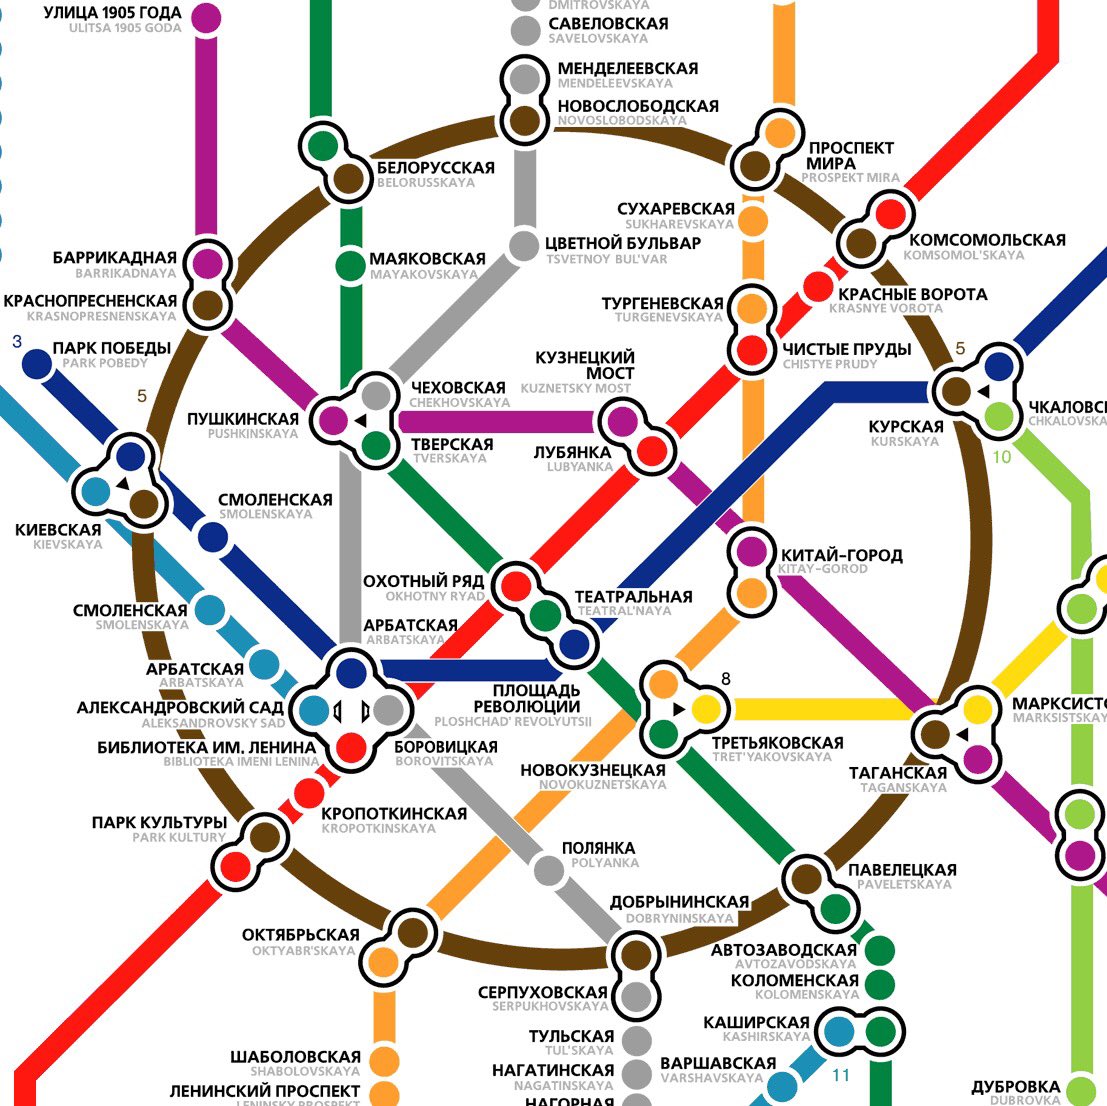 Международная станция метро москва схема - 98 фото